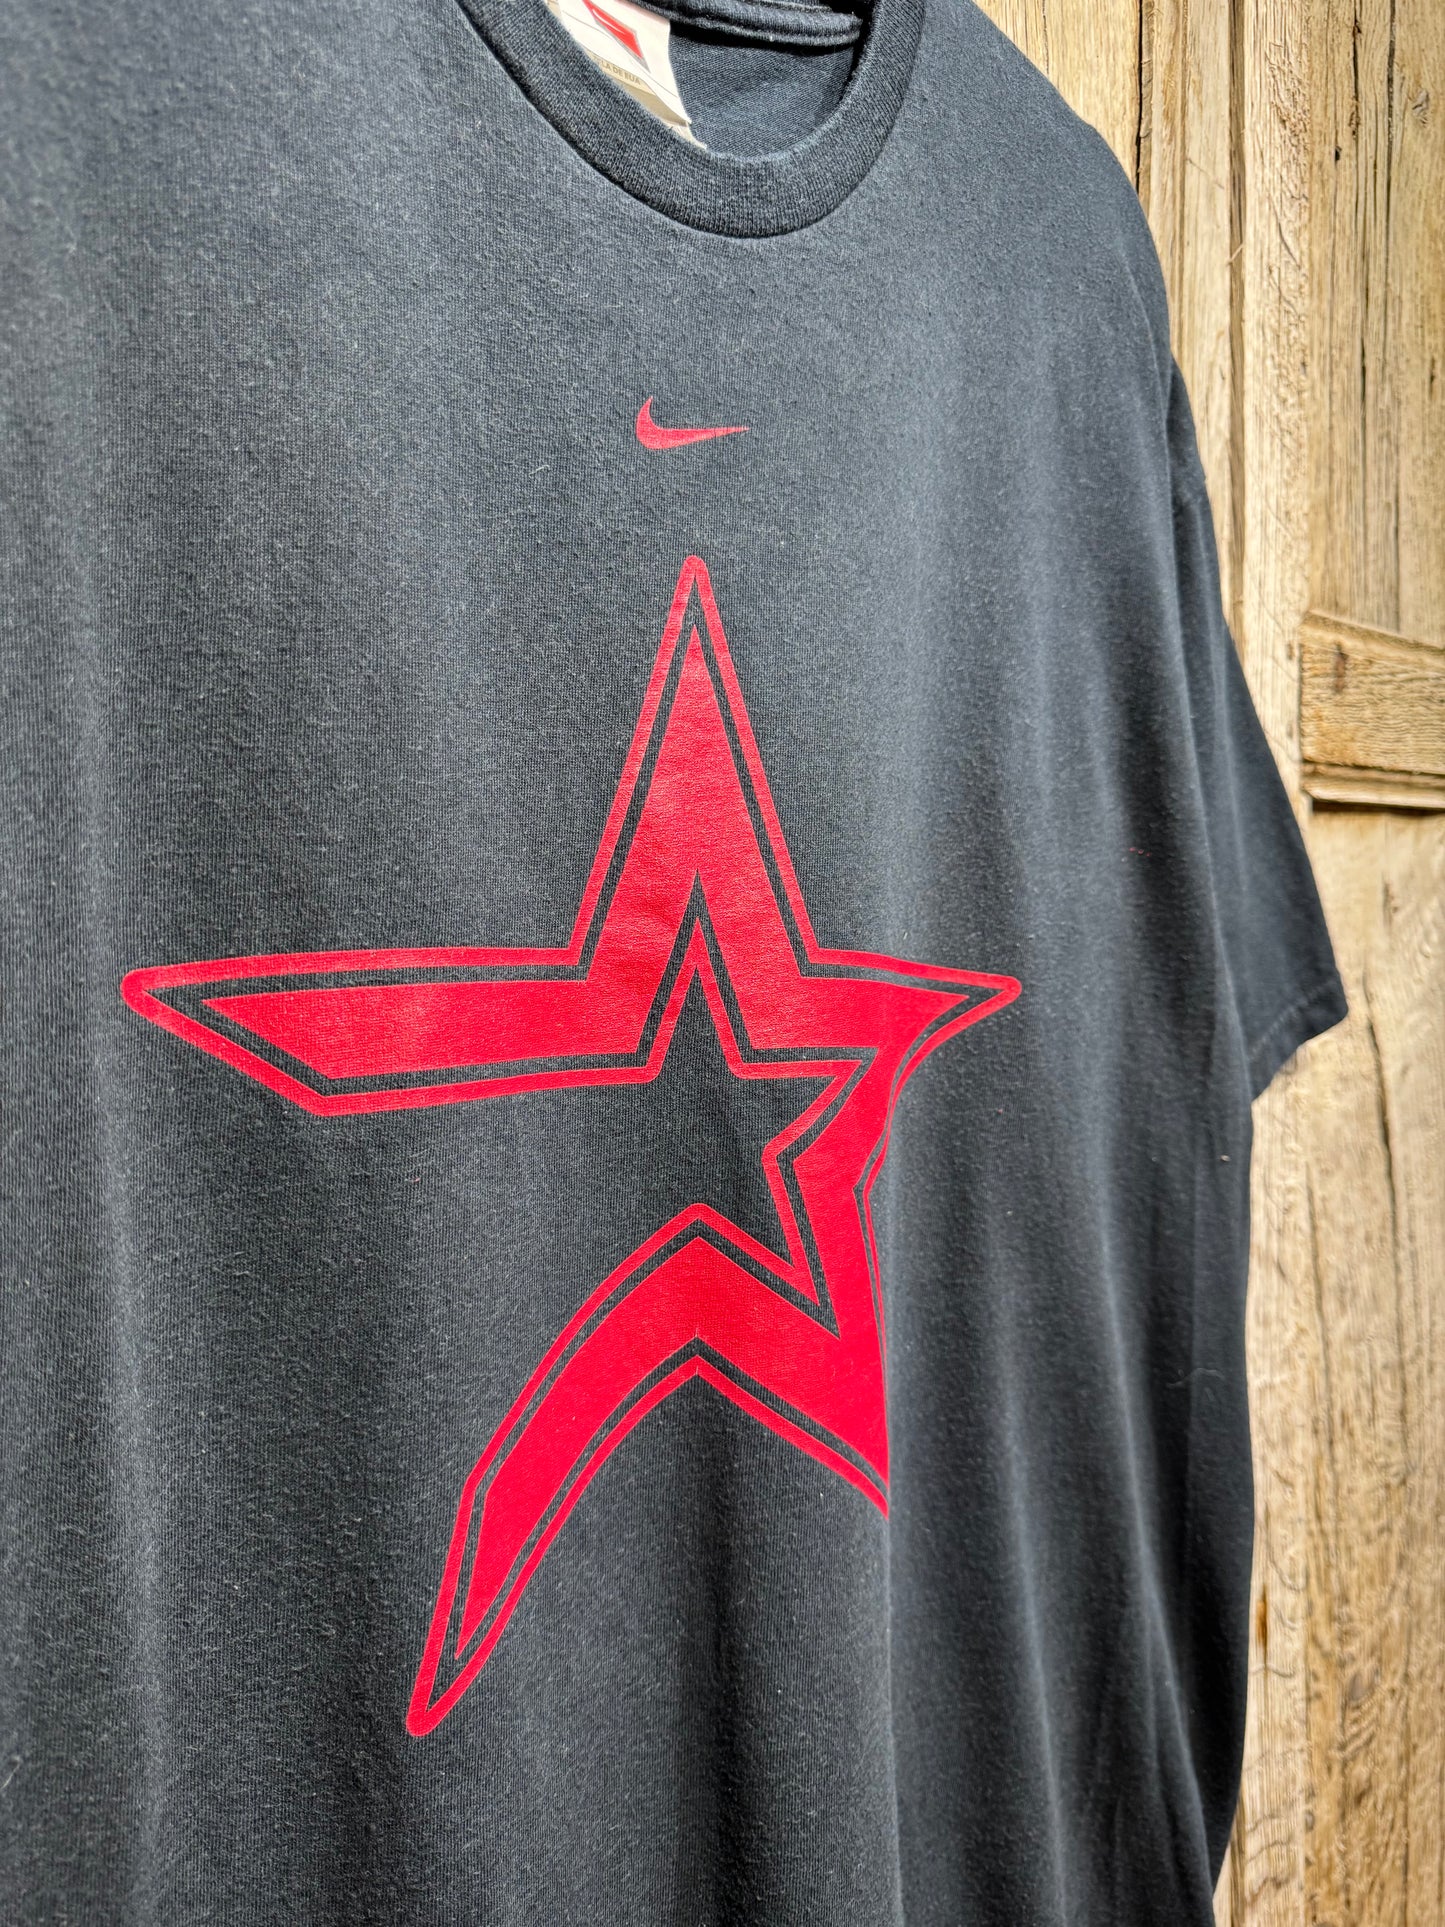 Vintage Nike Houston Astros Graphic Tee